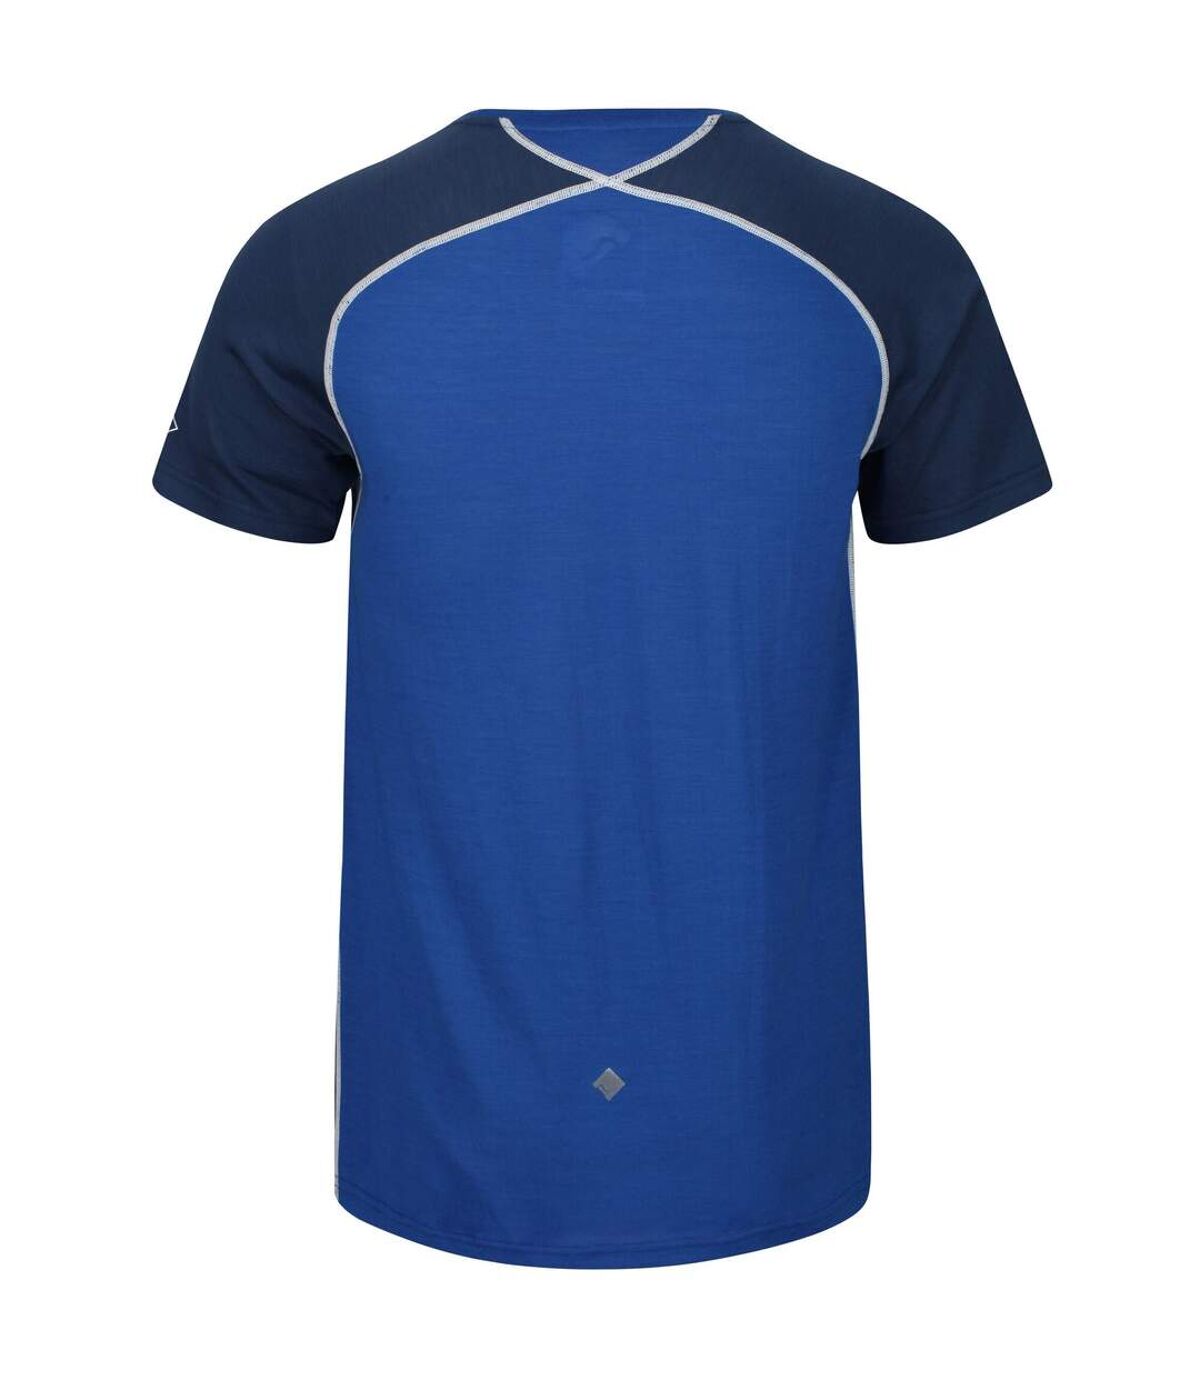 Regatta - T-shirt TORNELL - Hommes (Bleu/denim foncé) - UTRG4935